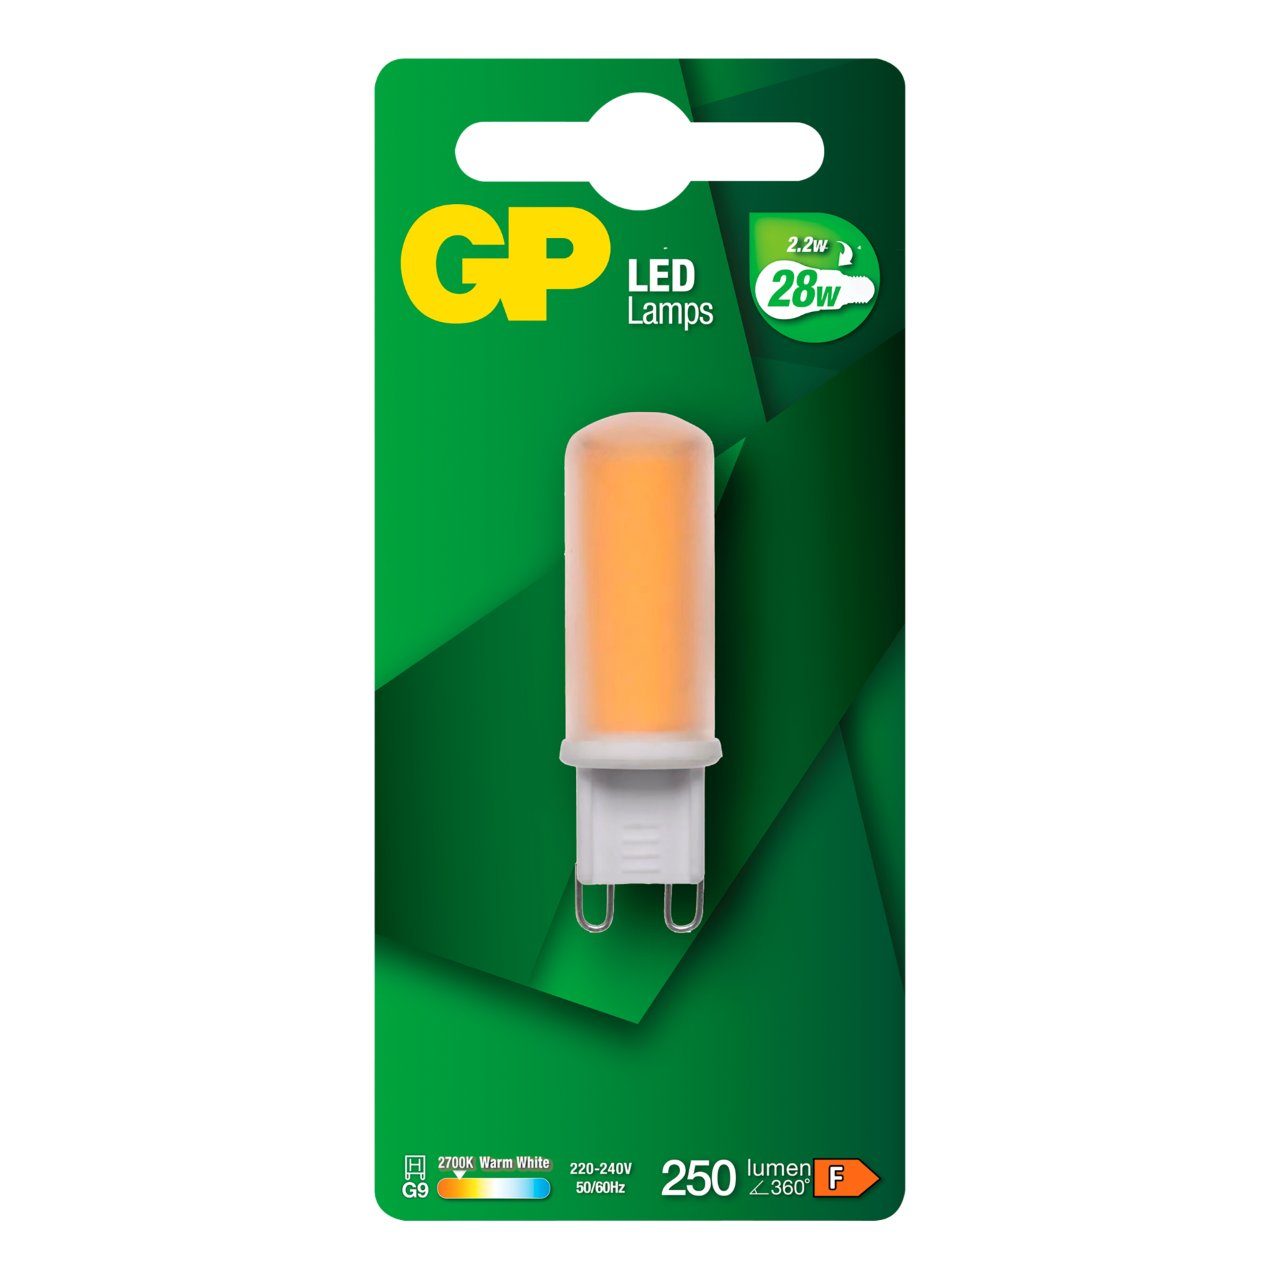 Led lamp GP 214998 G9 capsule